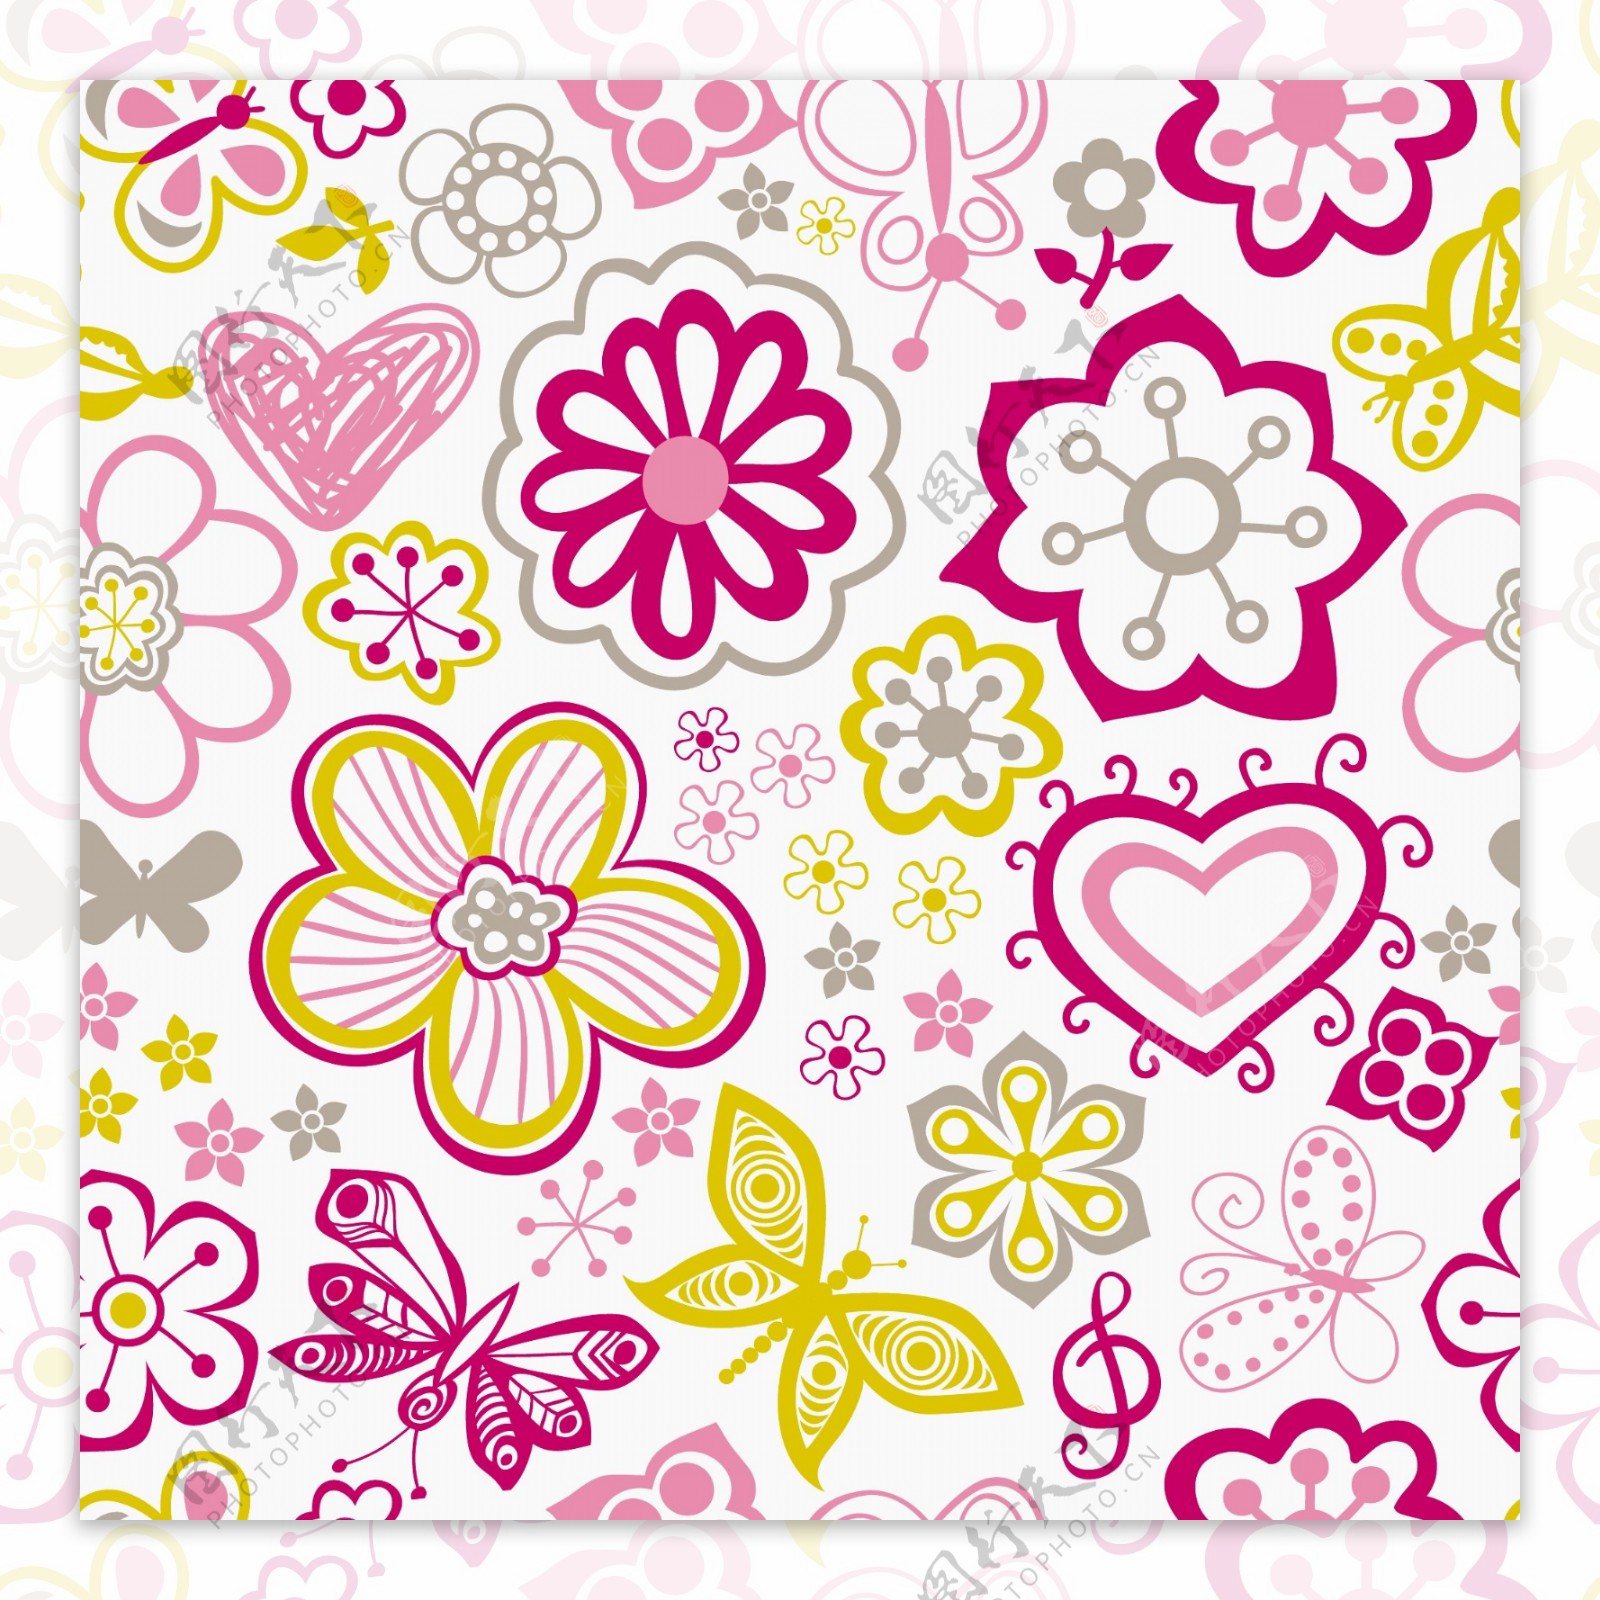 五颜六色的花的无缝模式中的卡通风格的无缝模式可用于墙纸